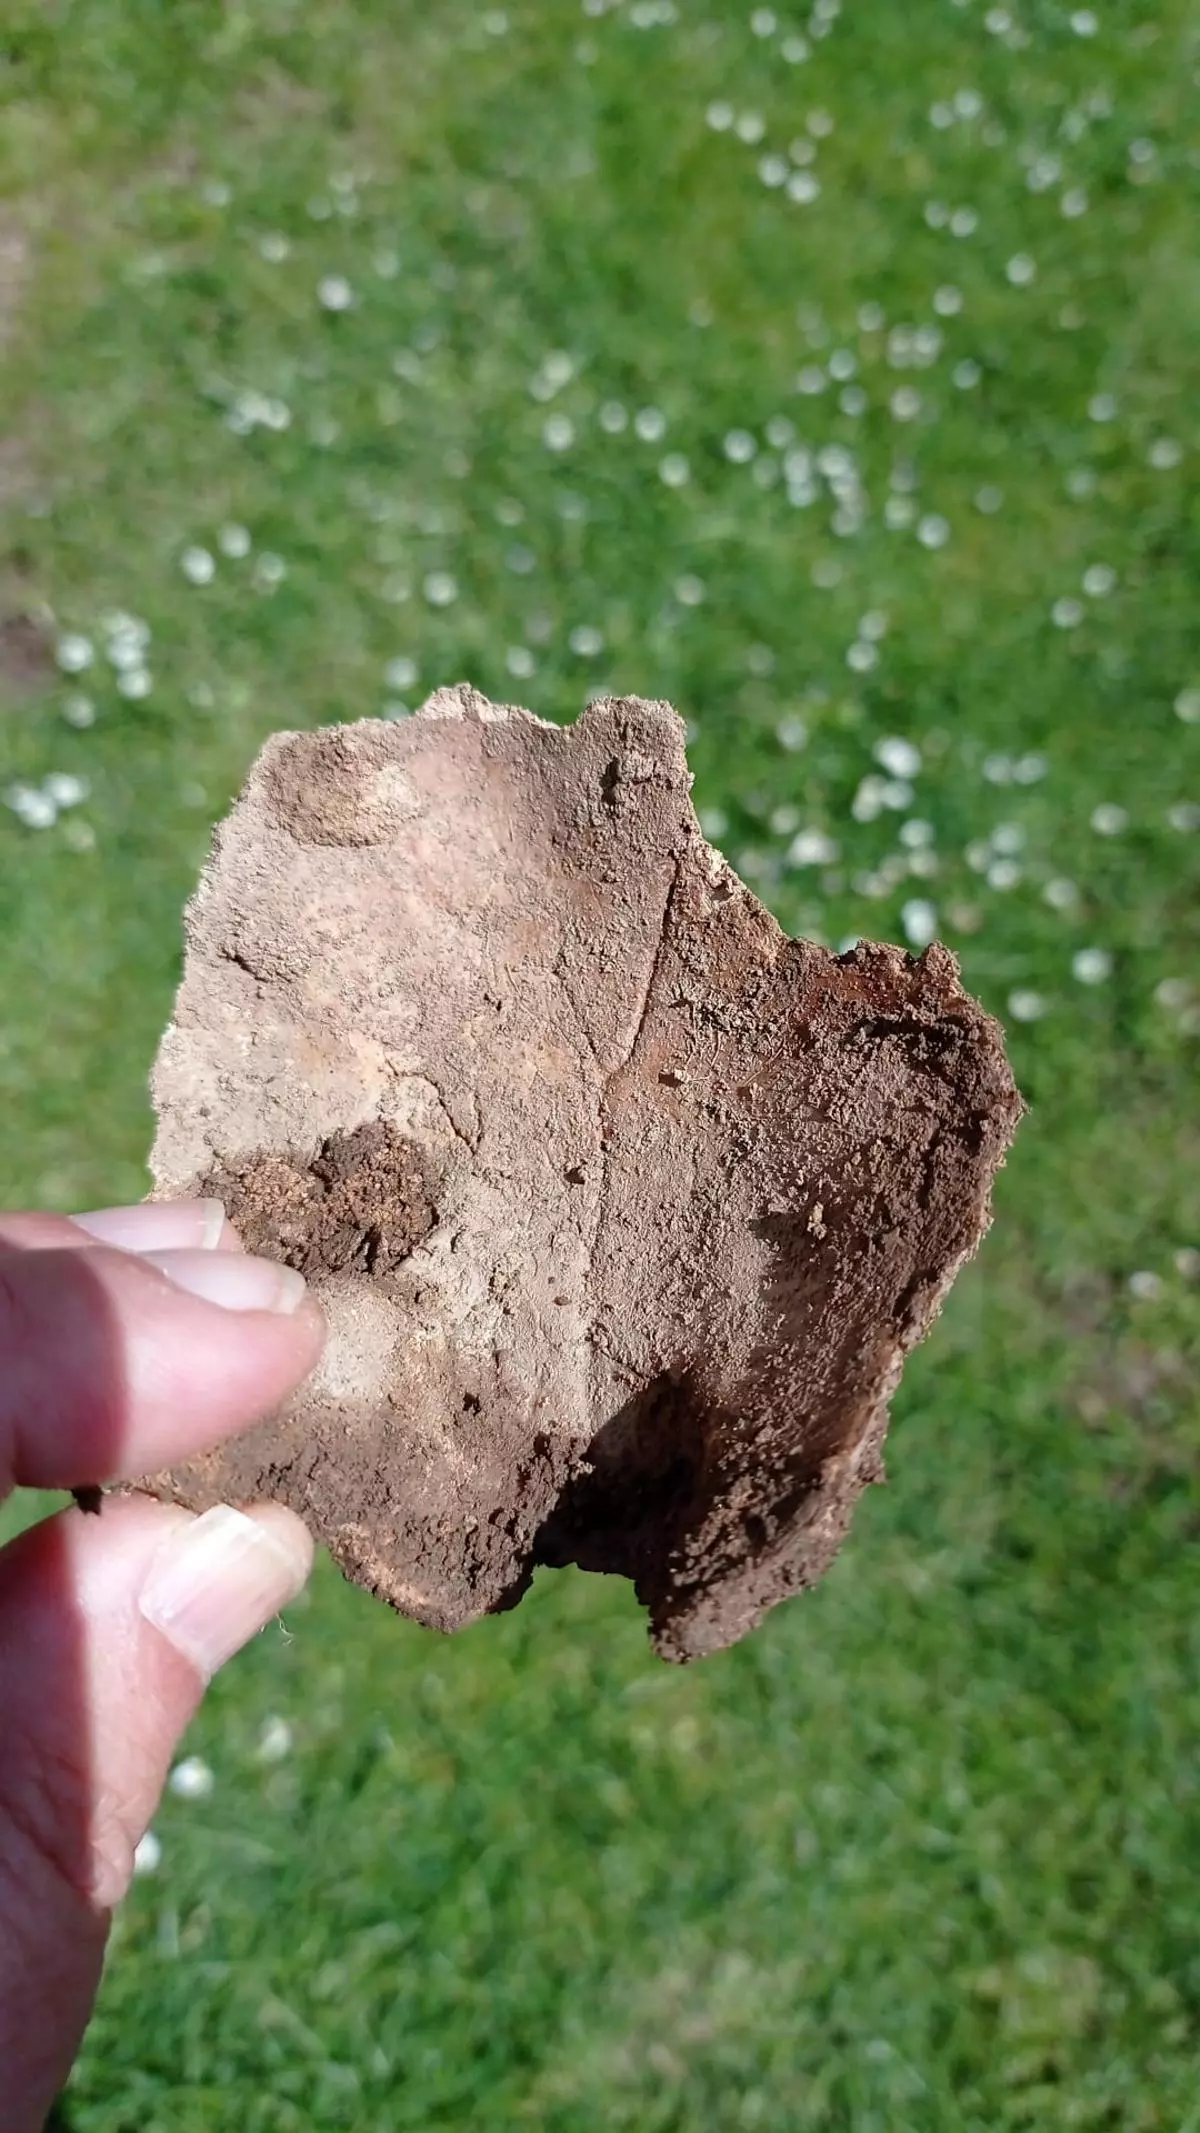 Obras de eliminación de humedad en la iglesia de Dexo descubren restos óseos humanos